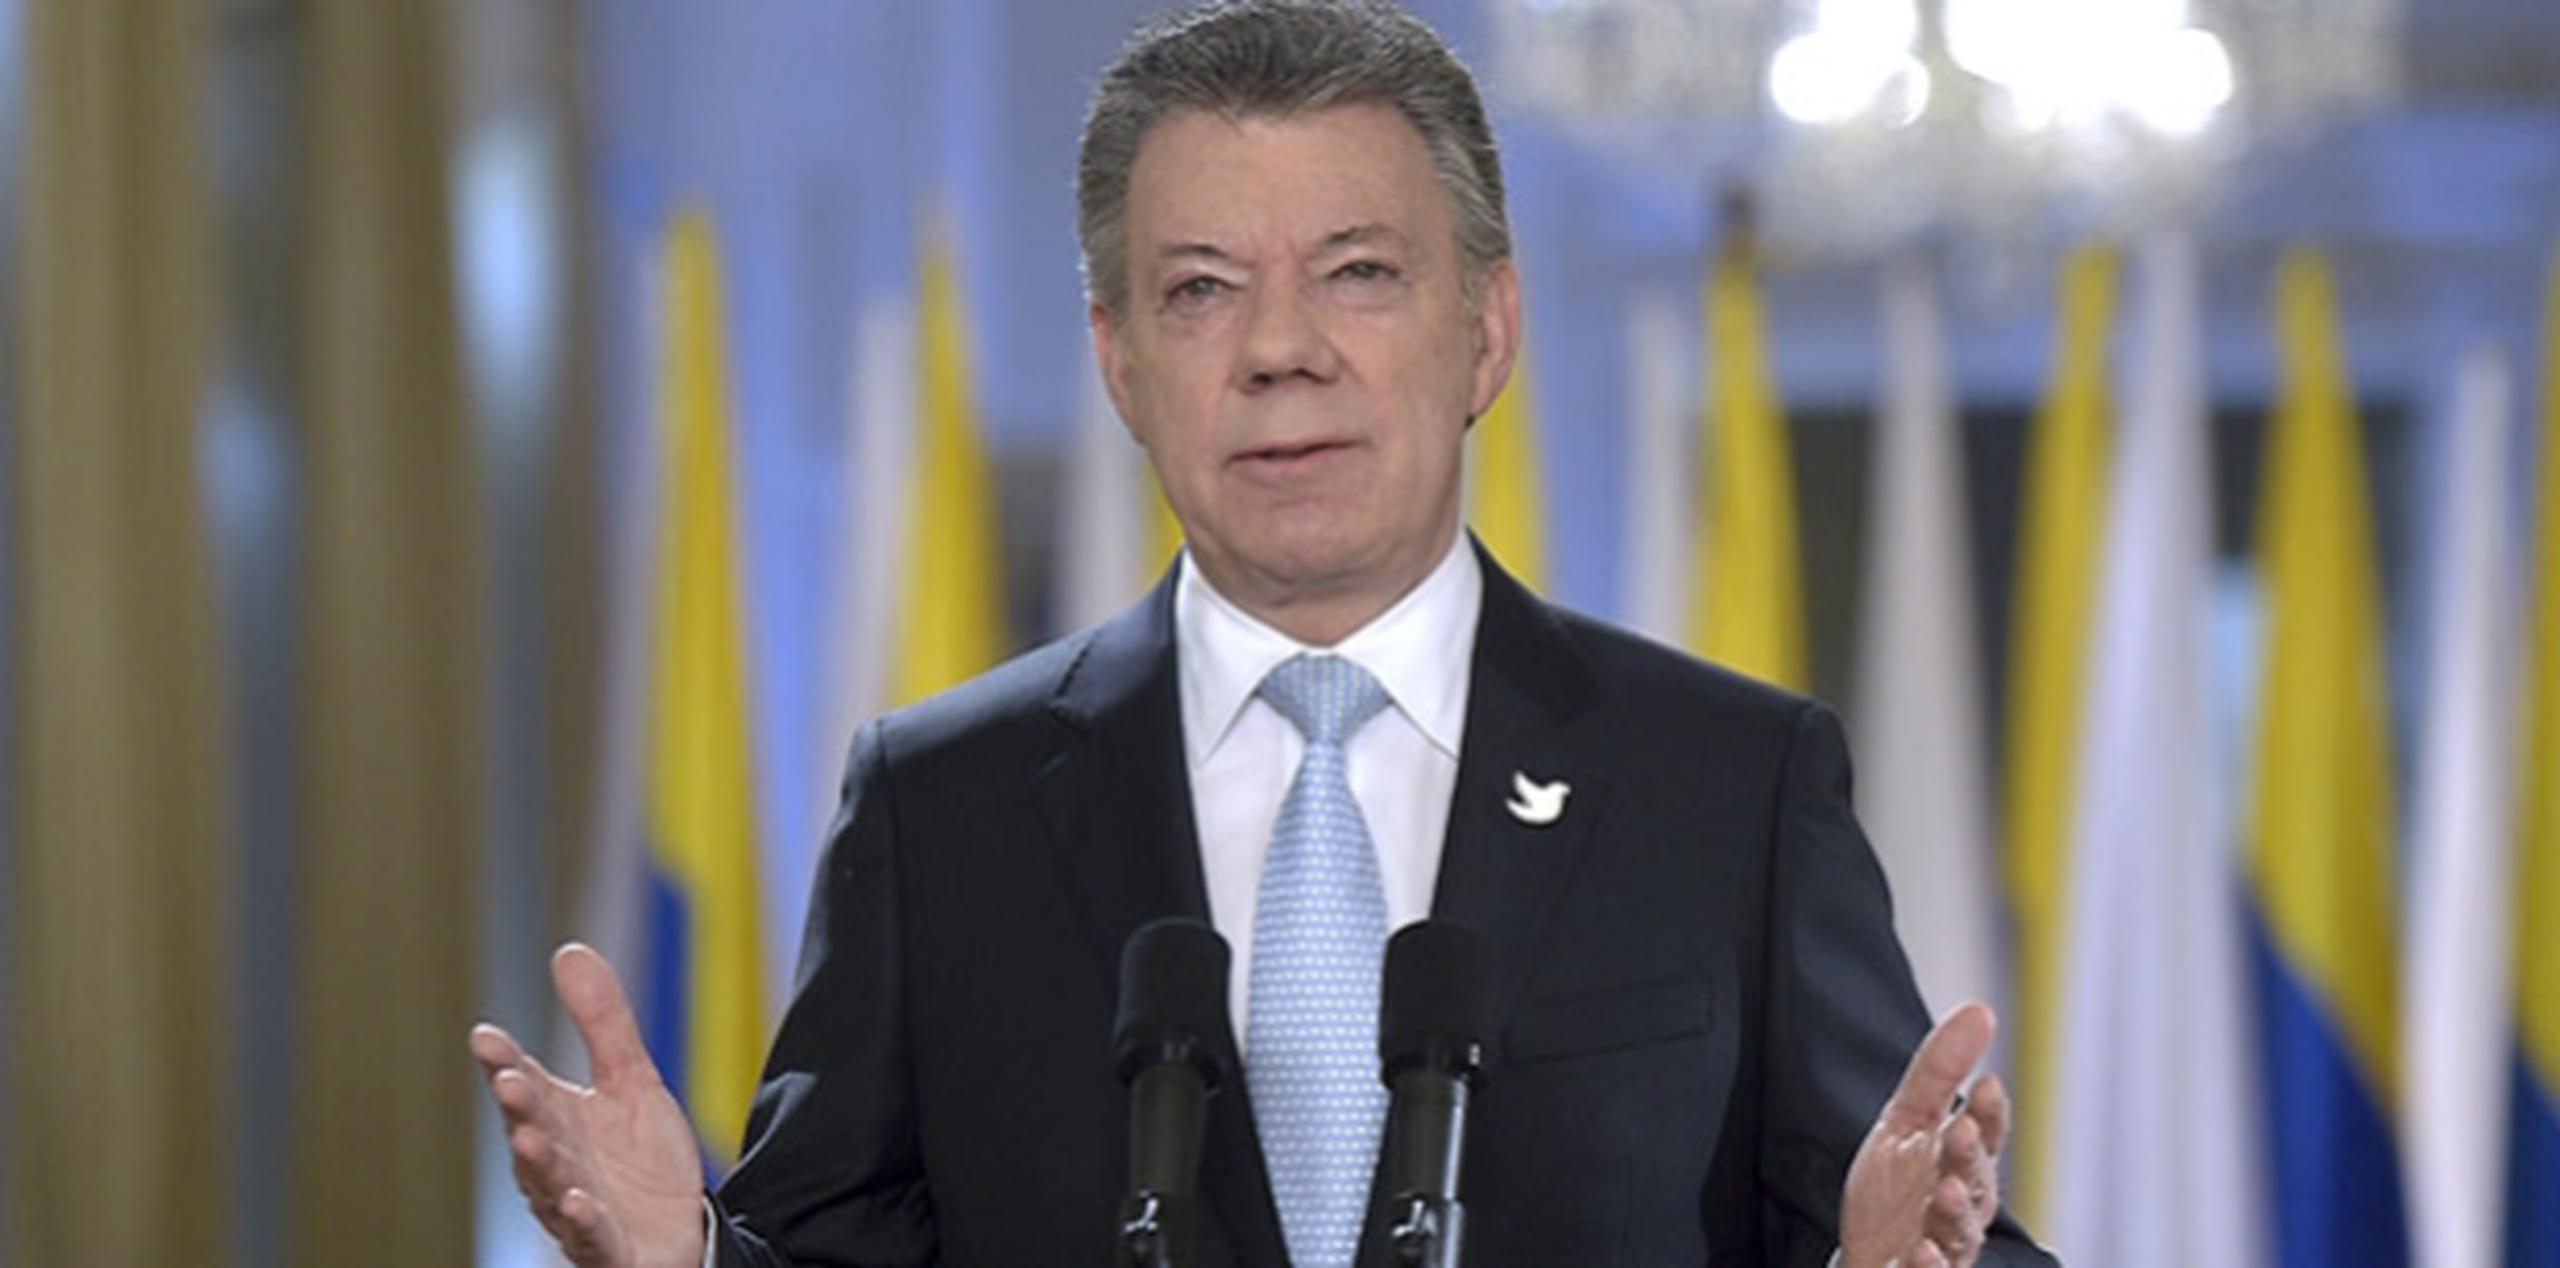 El presidente de Colombia Juan Manuel Santos ofreció un mensaje a los colombianos poco después de la firma del acuerdo en La Habana. (EFE)